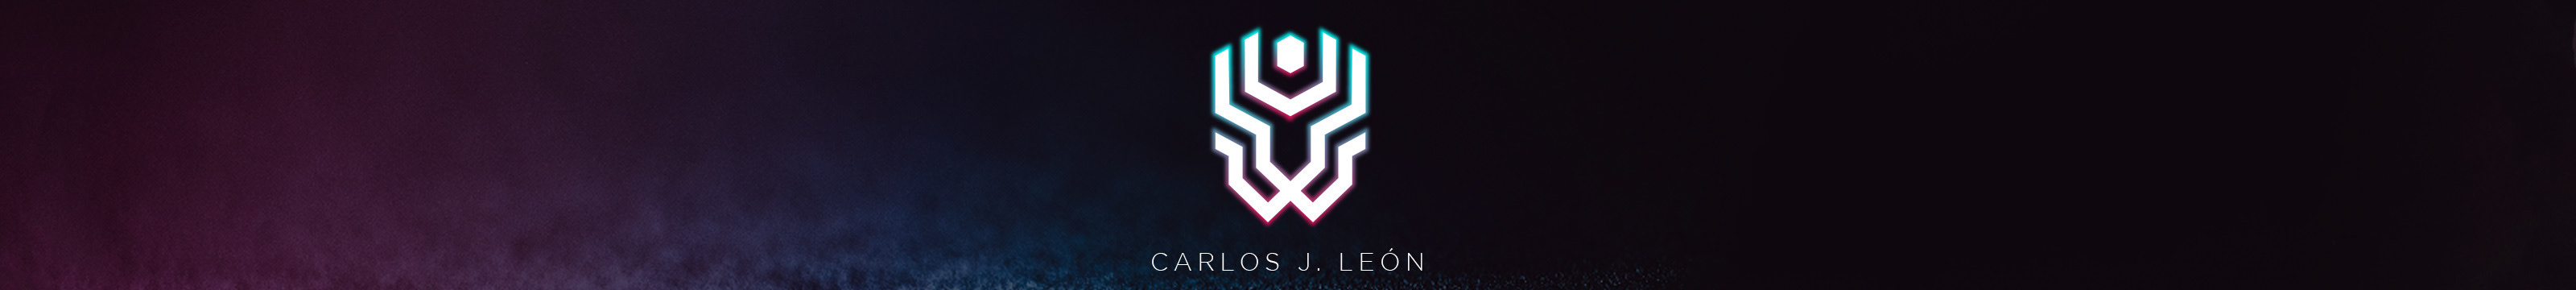 Profil-Banner von Carlos J. León